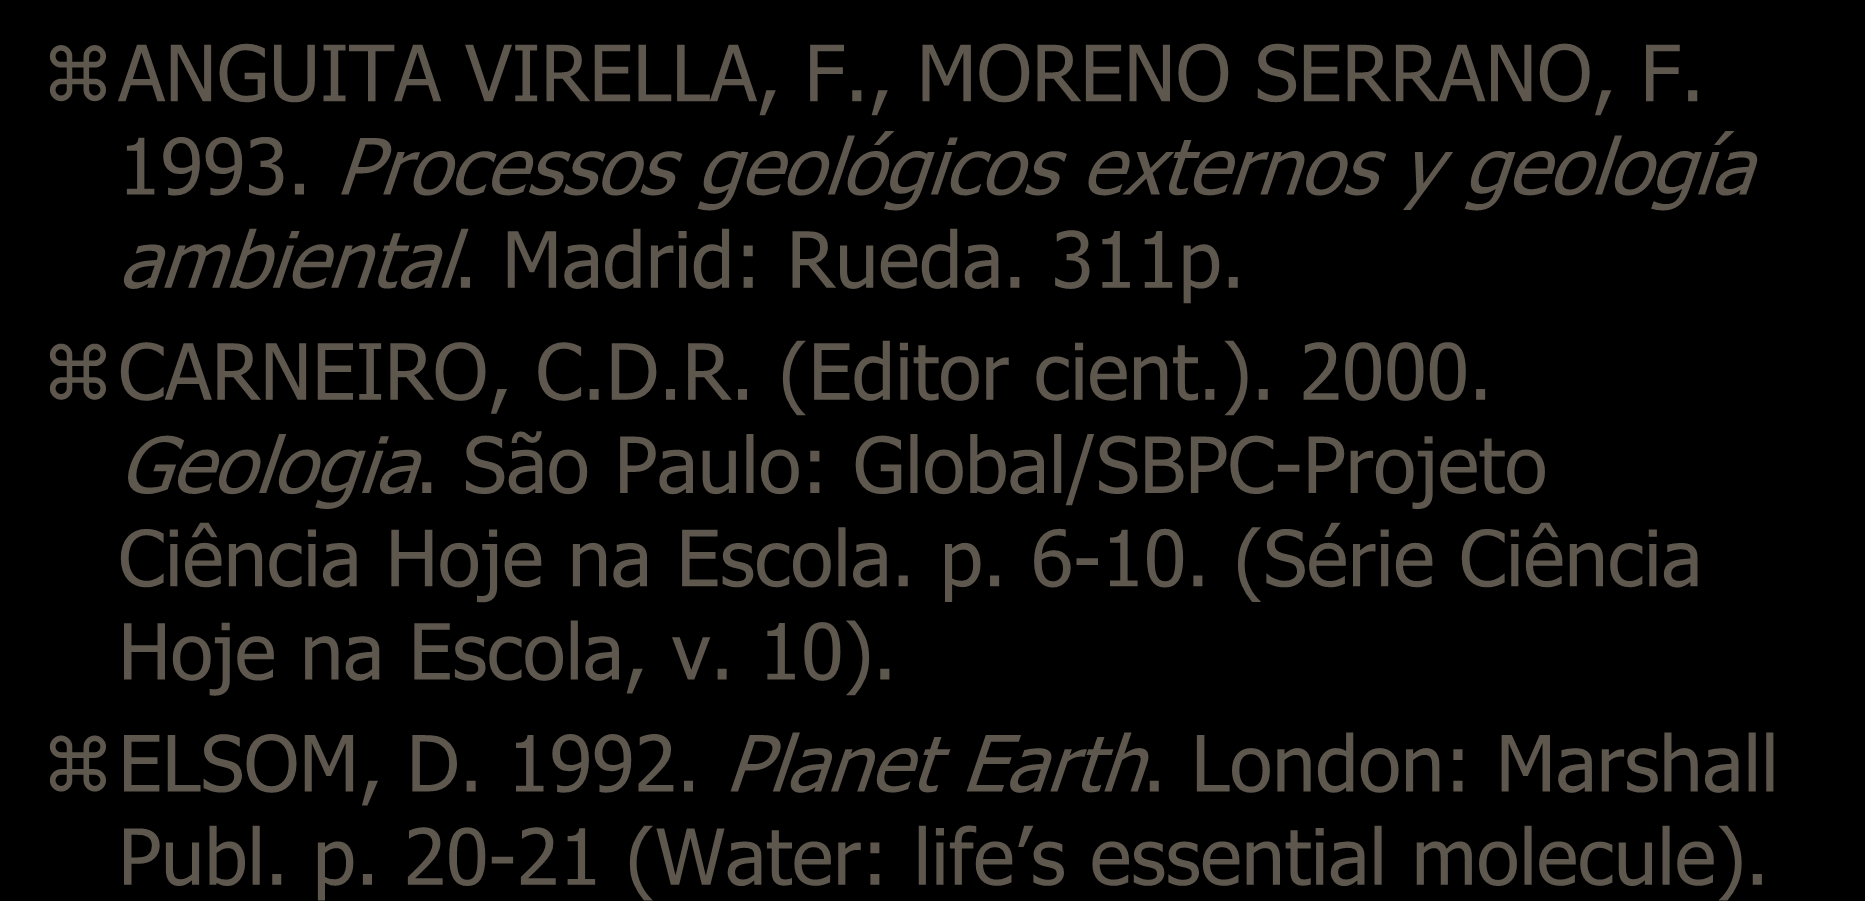 Bibliografia ANGUITA VIRELLA, F., MORENO SERRANO, F. 1993. Processos geológicos externos y geología ambiental. Madrid: Rueda. 311p. CARNEIRO, C.D.R. (Editor cient.). 2000. Geologia.